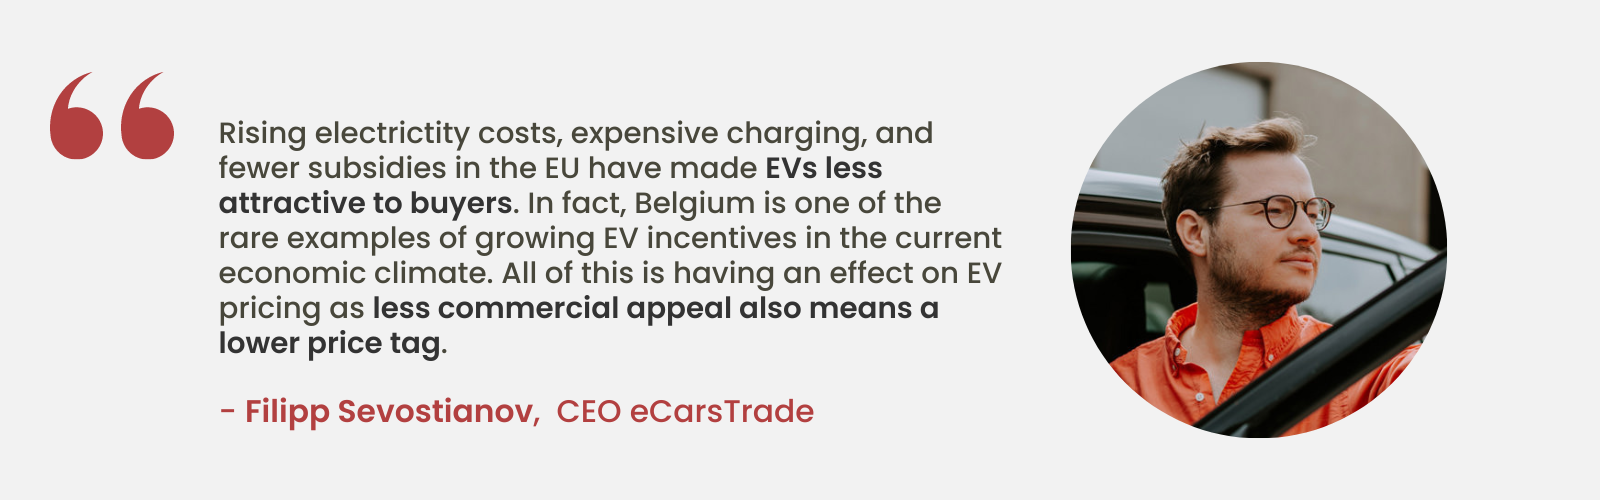 Szakértői betekintés Filipp Sevostianovtól, az eCarsTrade vezérigazgatójától az elektromos járművek vonzerejének csökkenéséről az EU-n belüli emelkedő költségek és kevesebb támogatás miatt, kiemelve Belgium egyedülálló helyzetét a növekvő elektromosjármű-ösztönzőkkel.